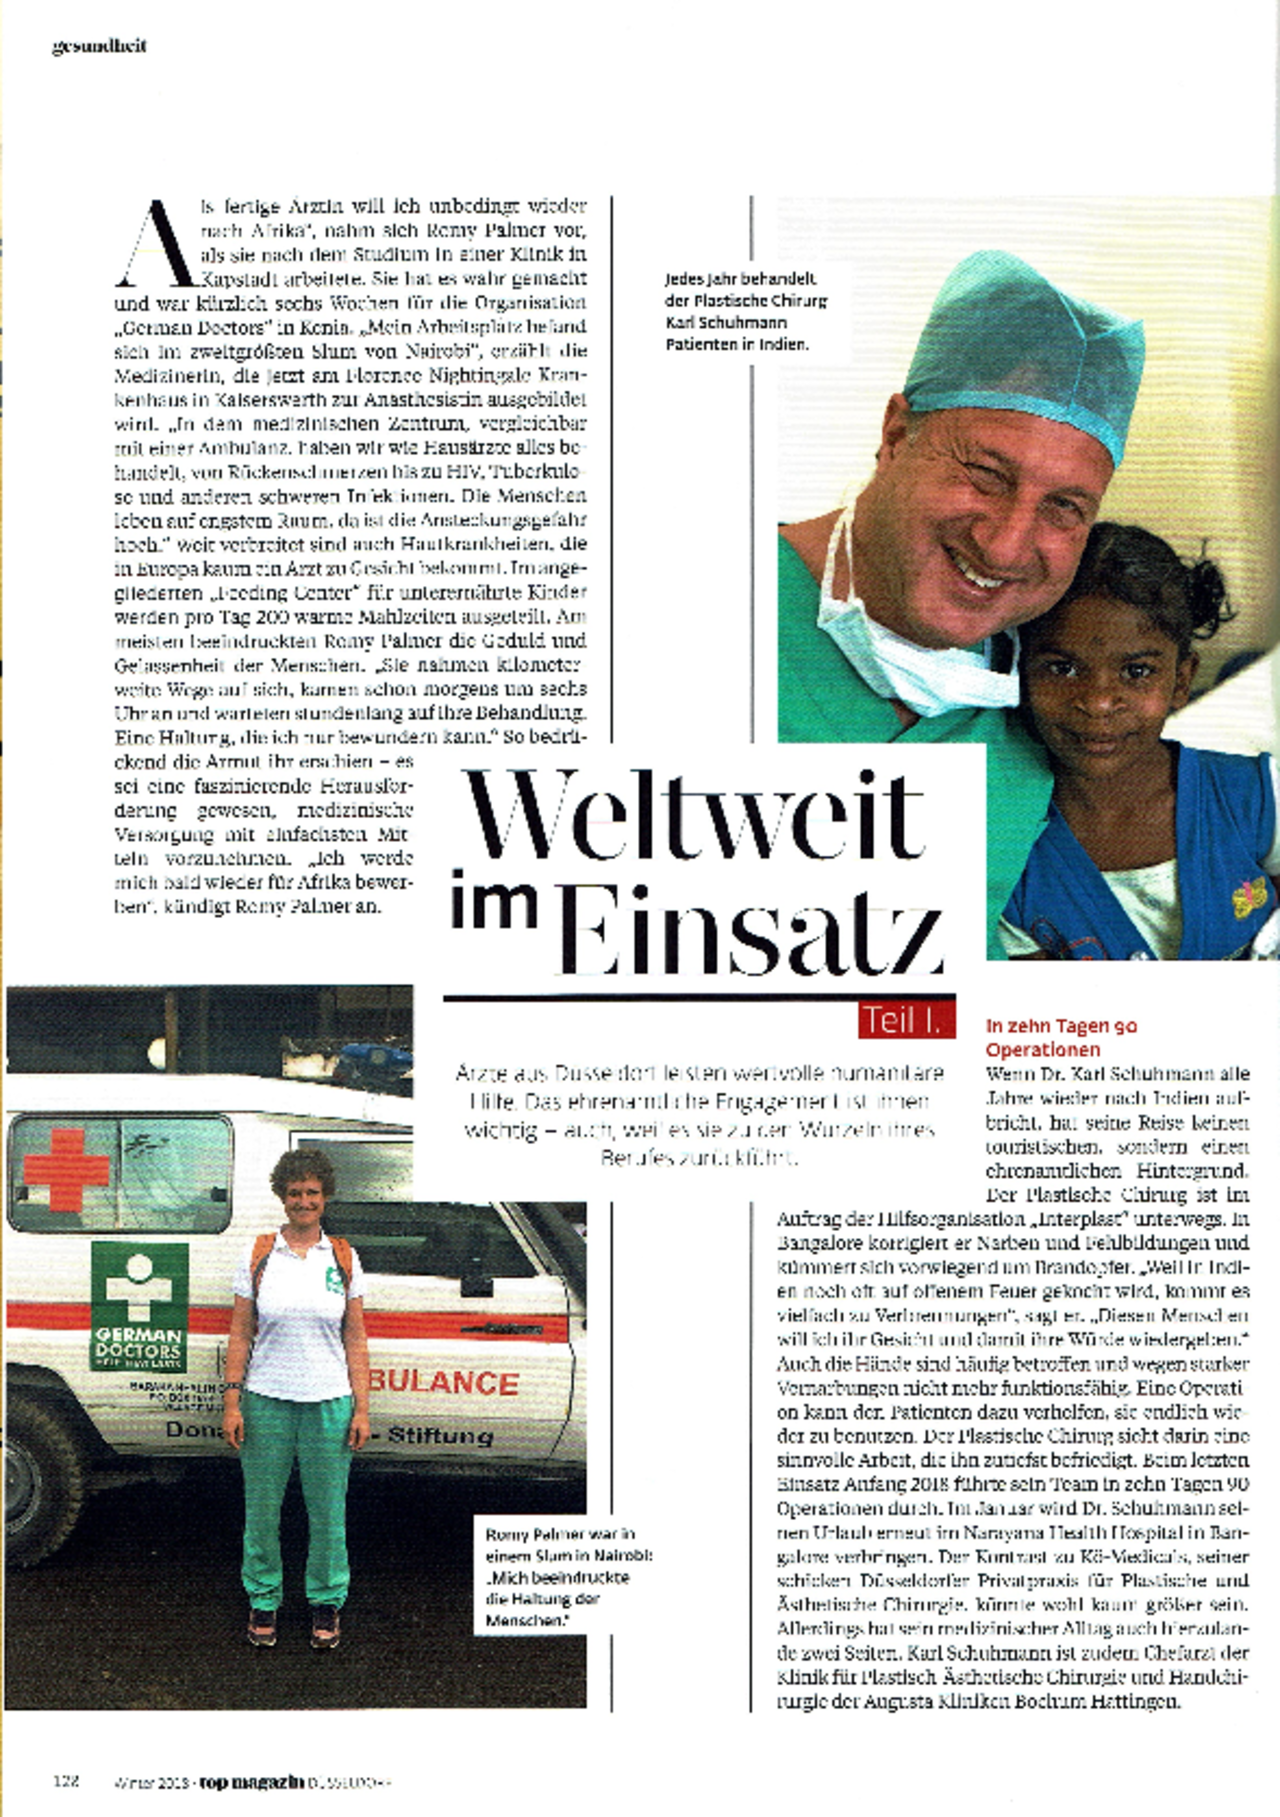 Top Magazin Düsseldorf berichtet über Dr. Schuhmann